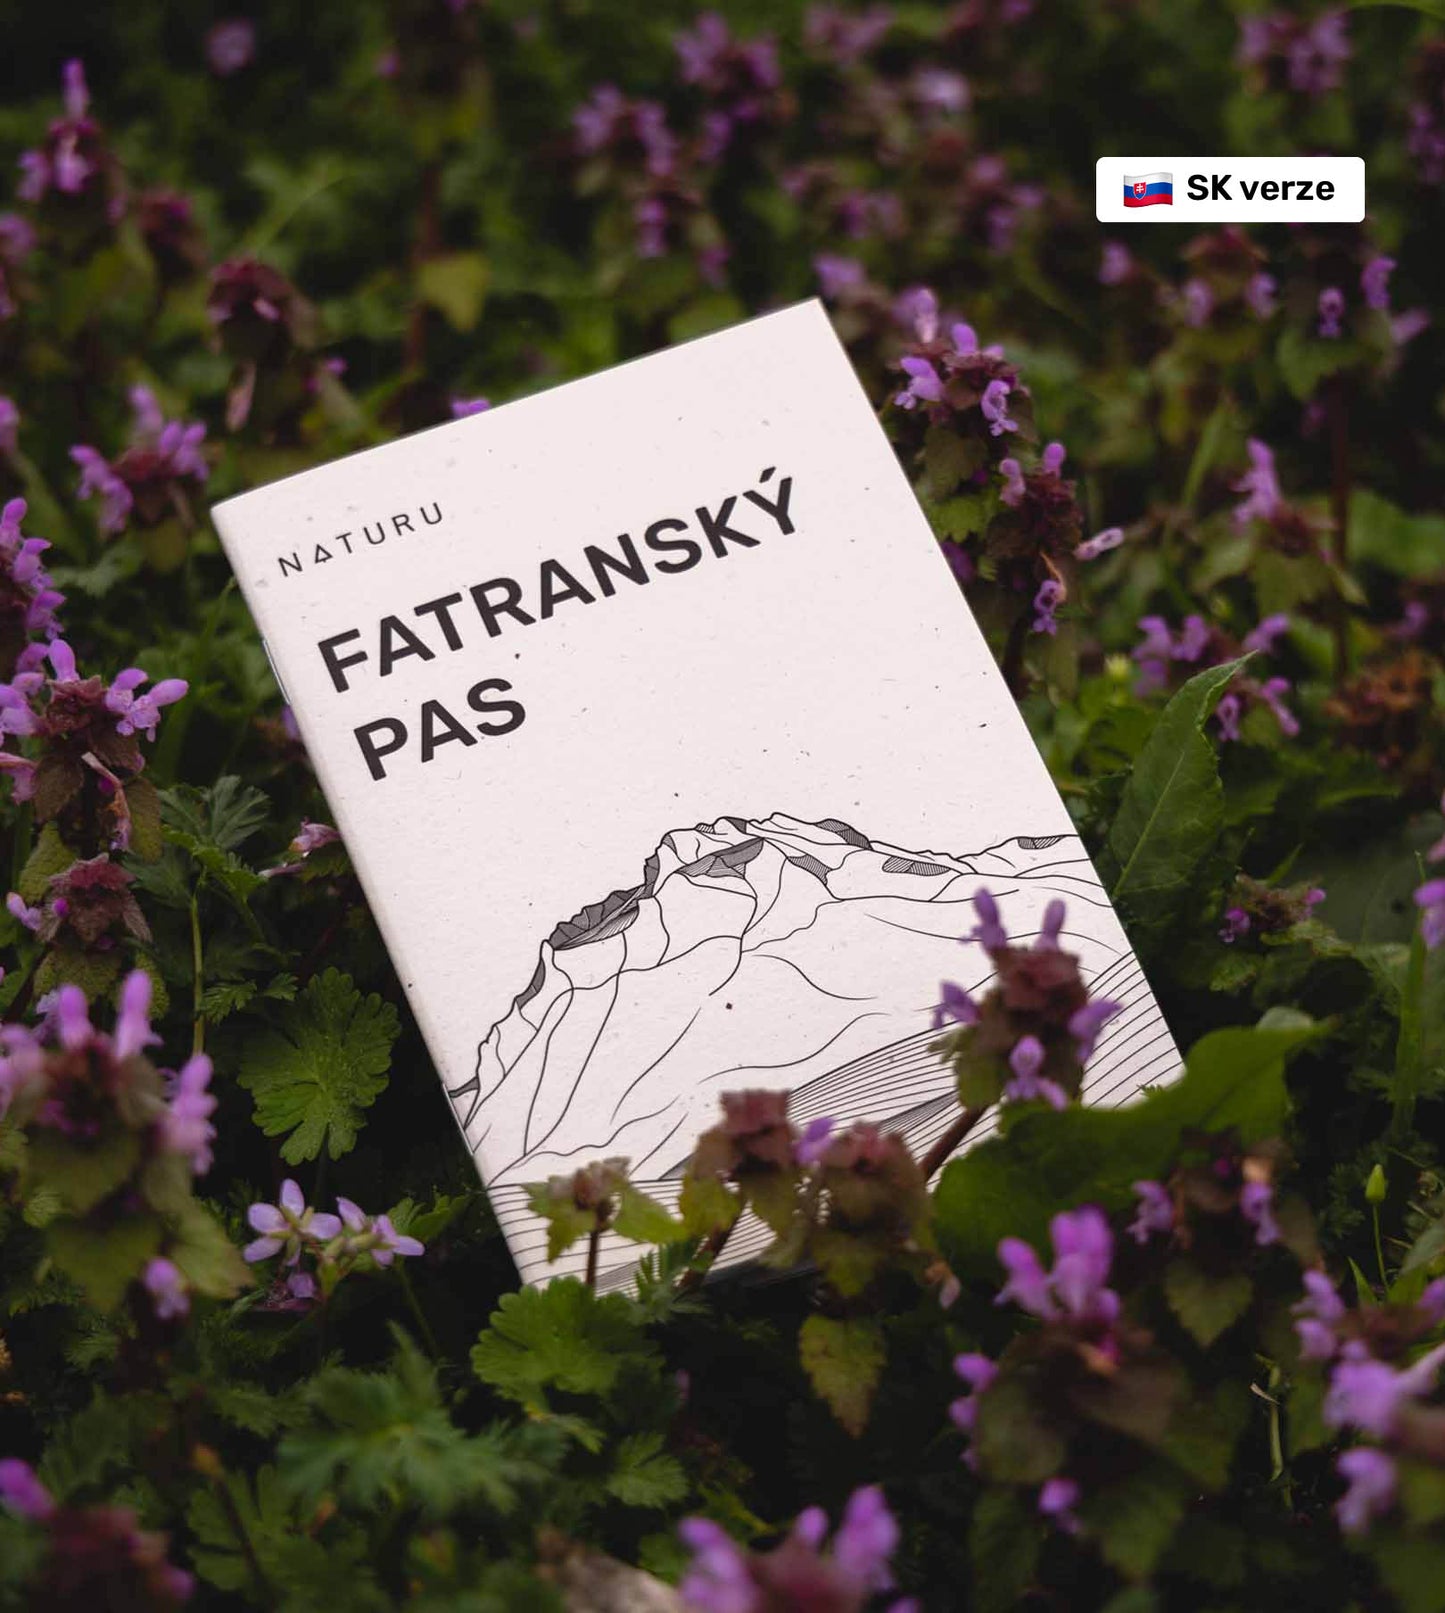 Fatranský pas (SK verze)